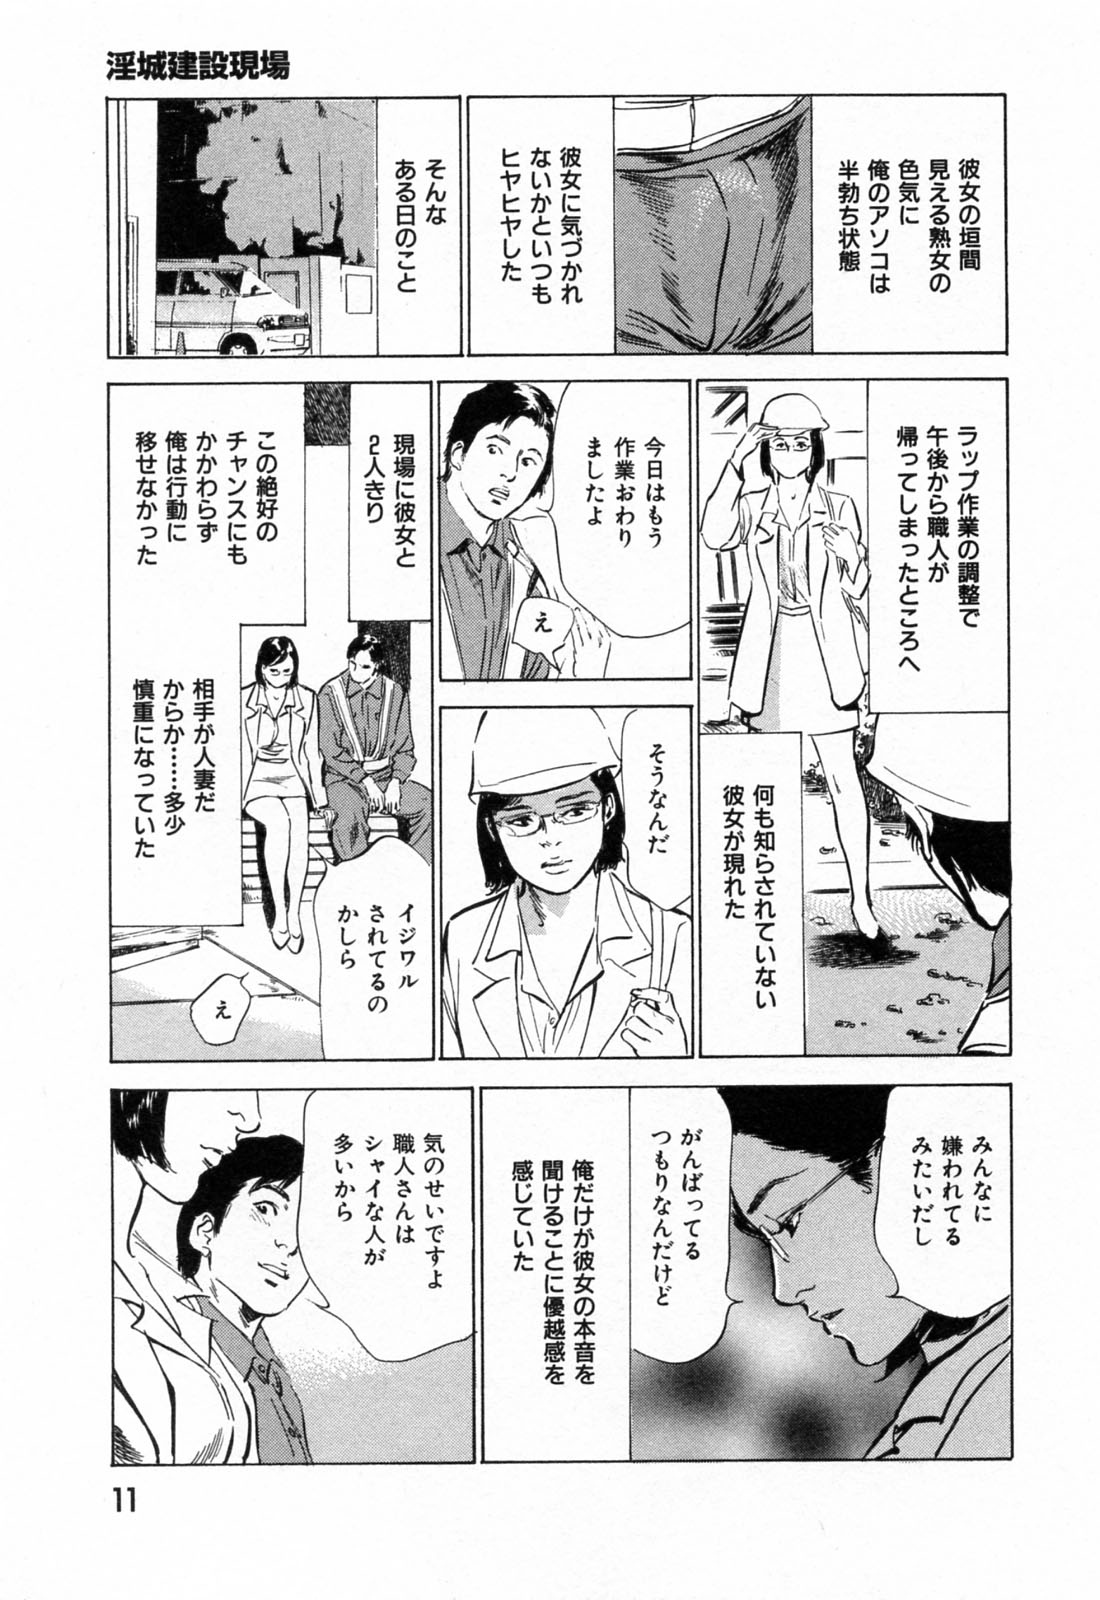 [Hazuki Kaoru] Gokinjo Okusama no Naishobanashi 1 page 13 full